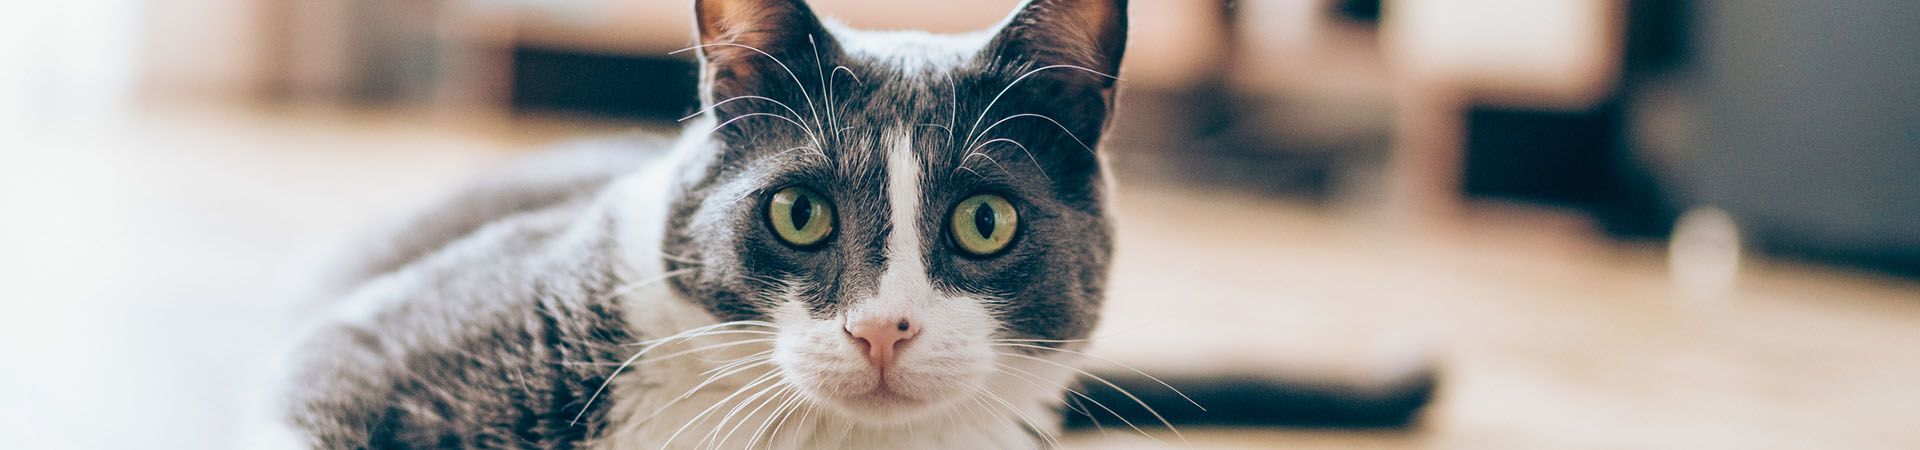 Katten houden – Huiskat ligt op de parketvloer.